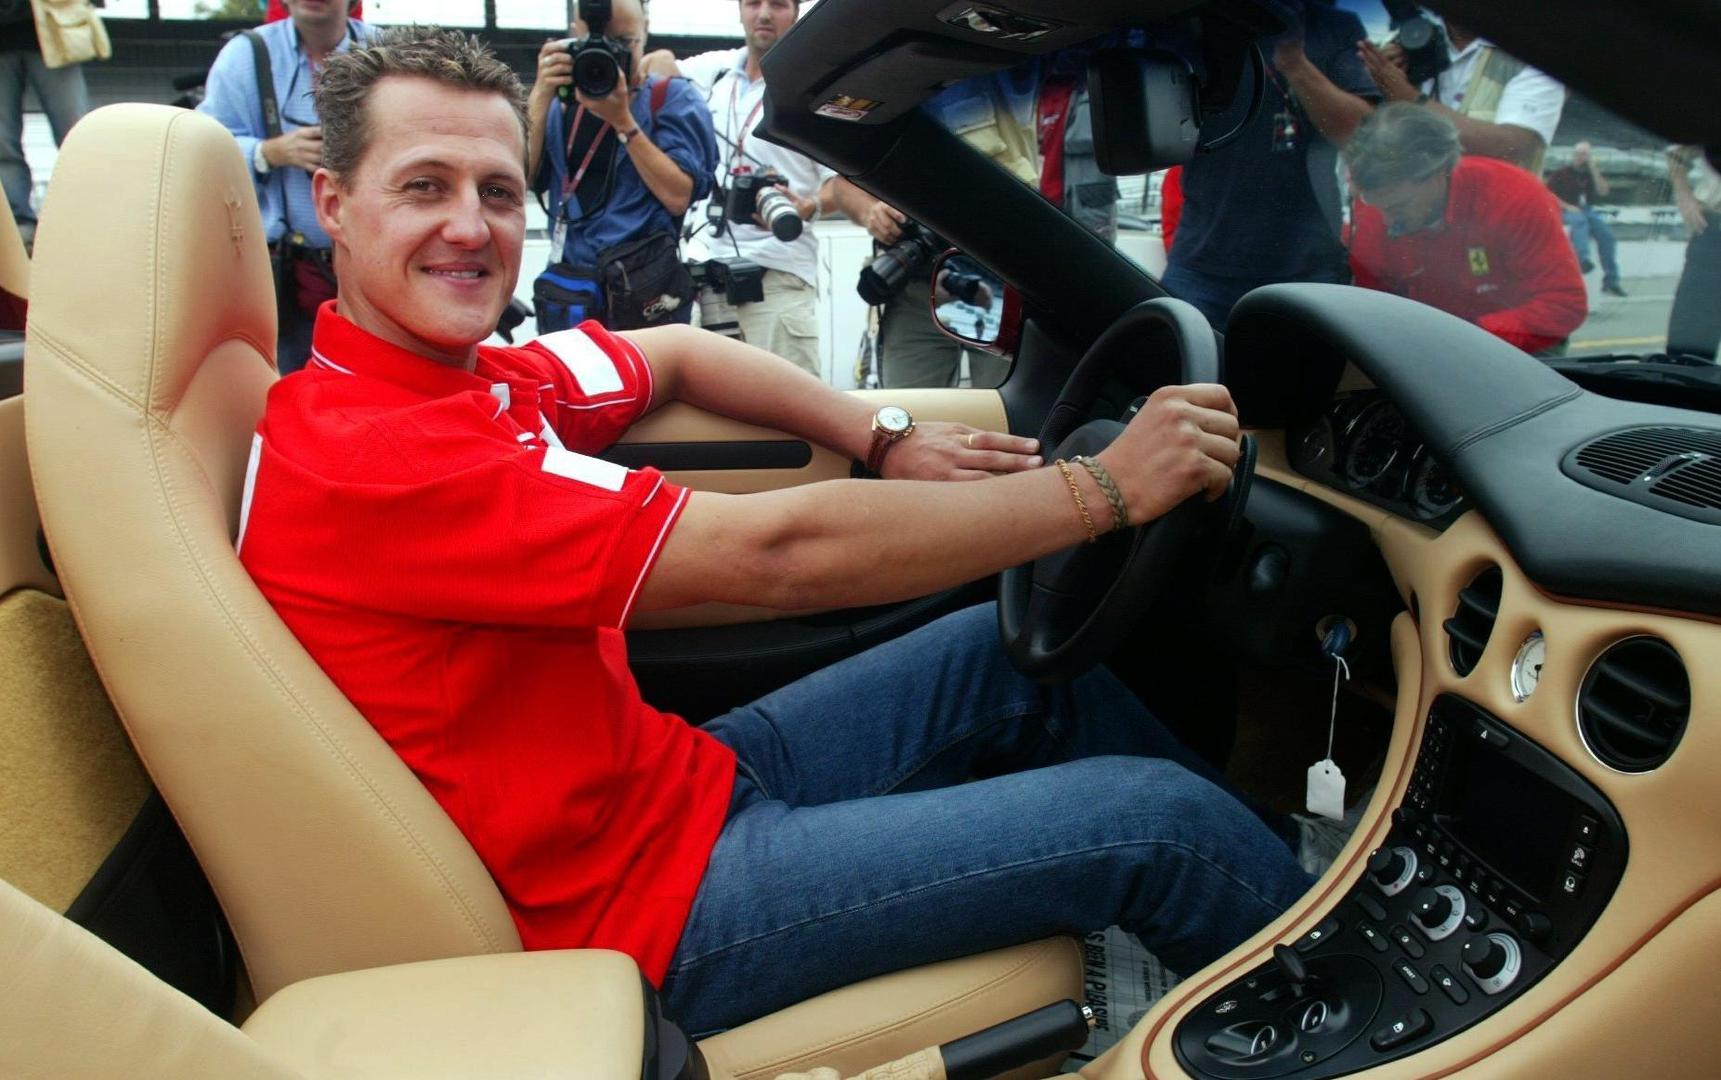 Legendarni Michael Schumacher ima 49 godina. No, i ove je godine ta obljetnica tužna jer je automobilistički majstor u vrlo teškom stanju.